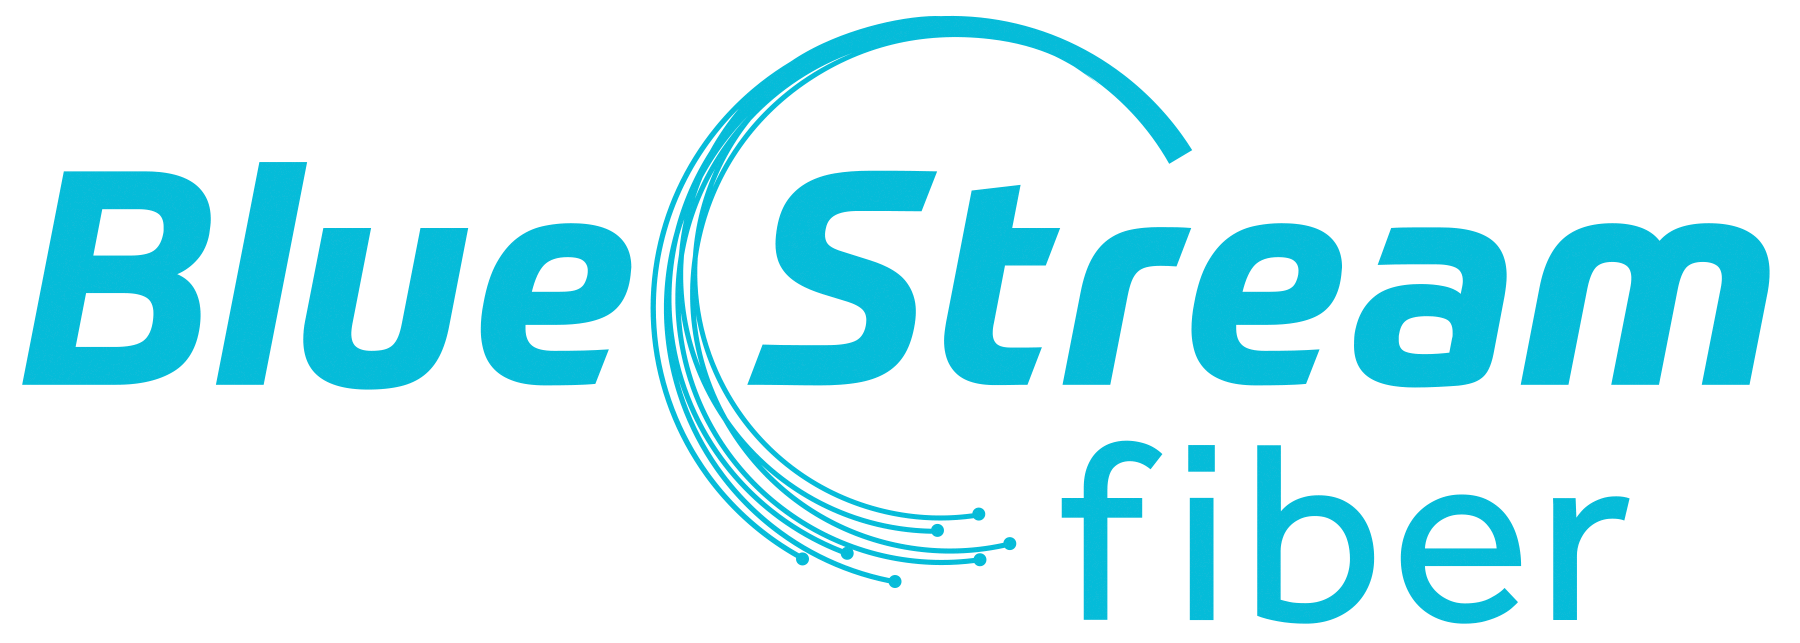 000261 - Blue Stream New Logos for Fiber Aqua FNL